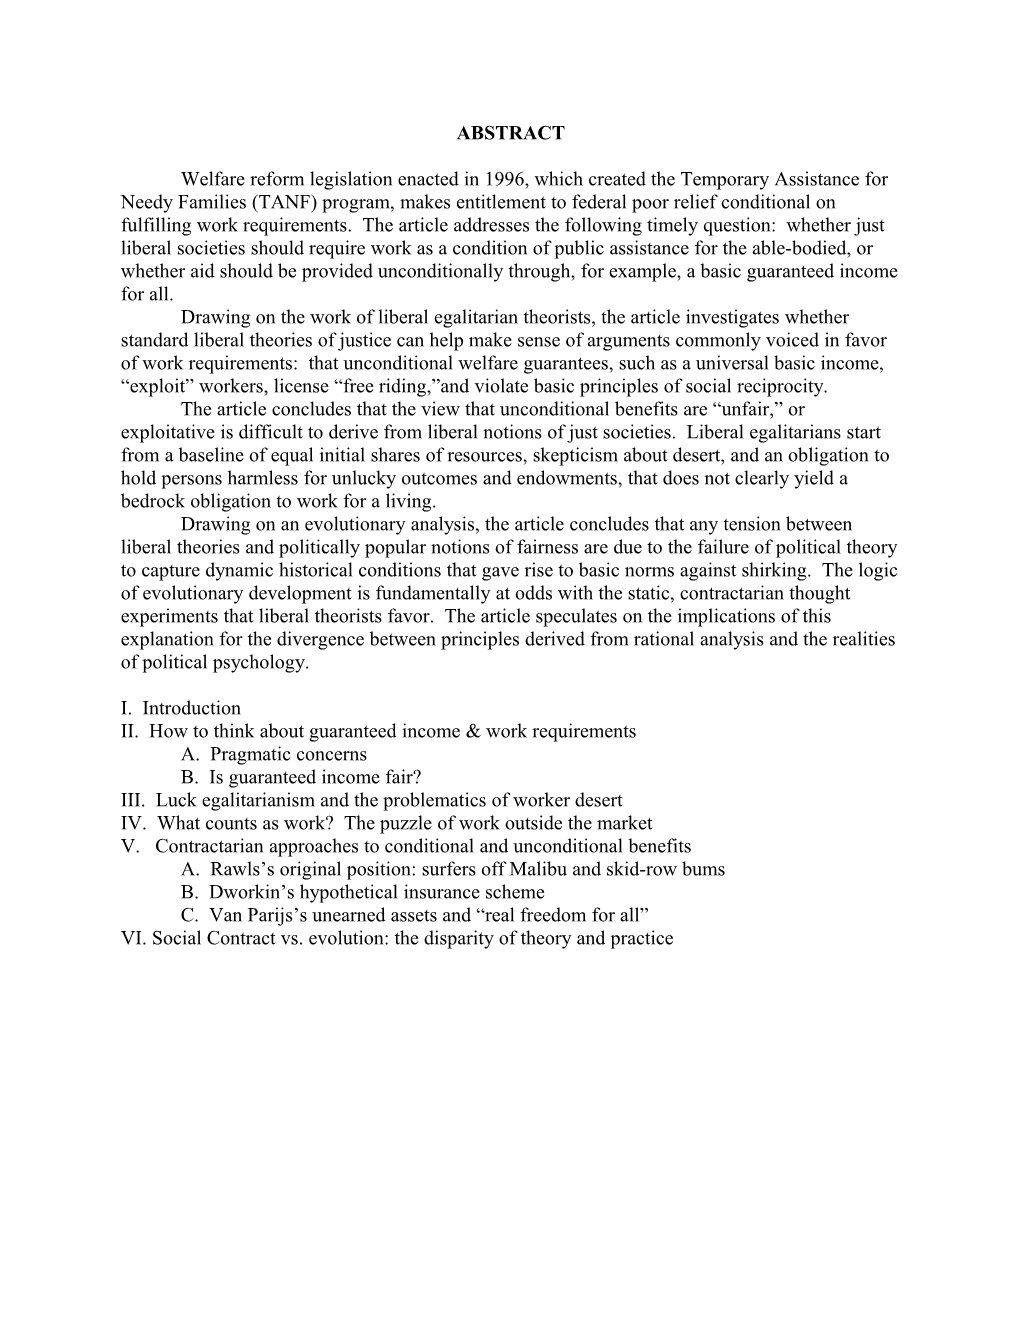 USBIG Discussion Paper No. 006, November 2001